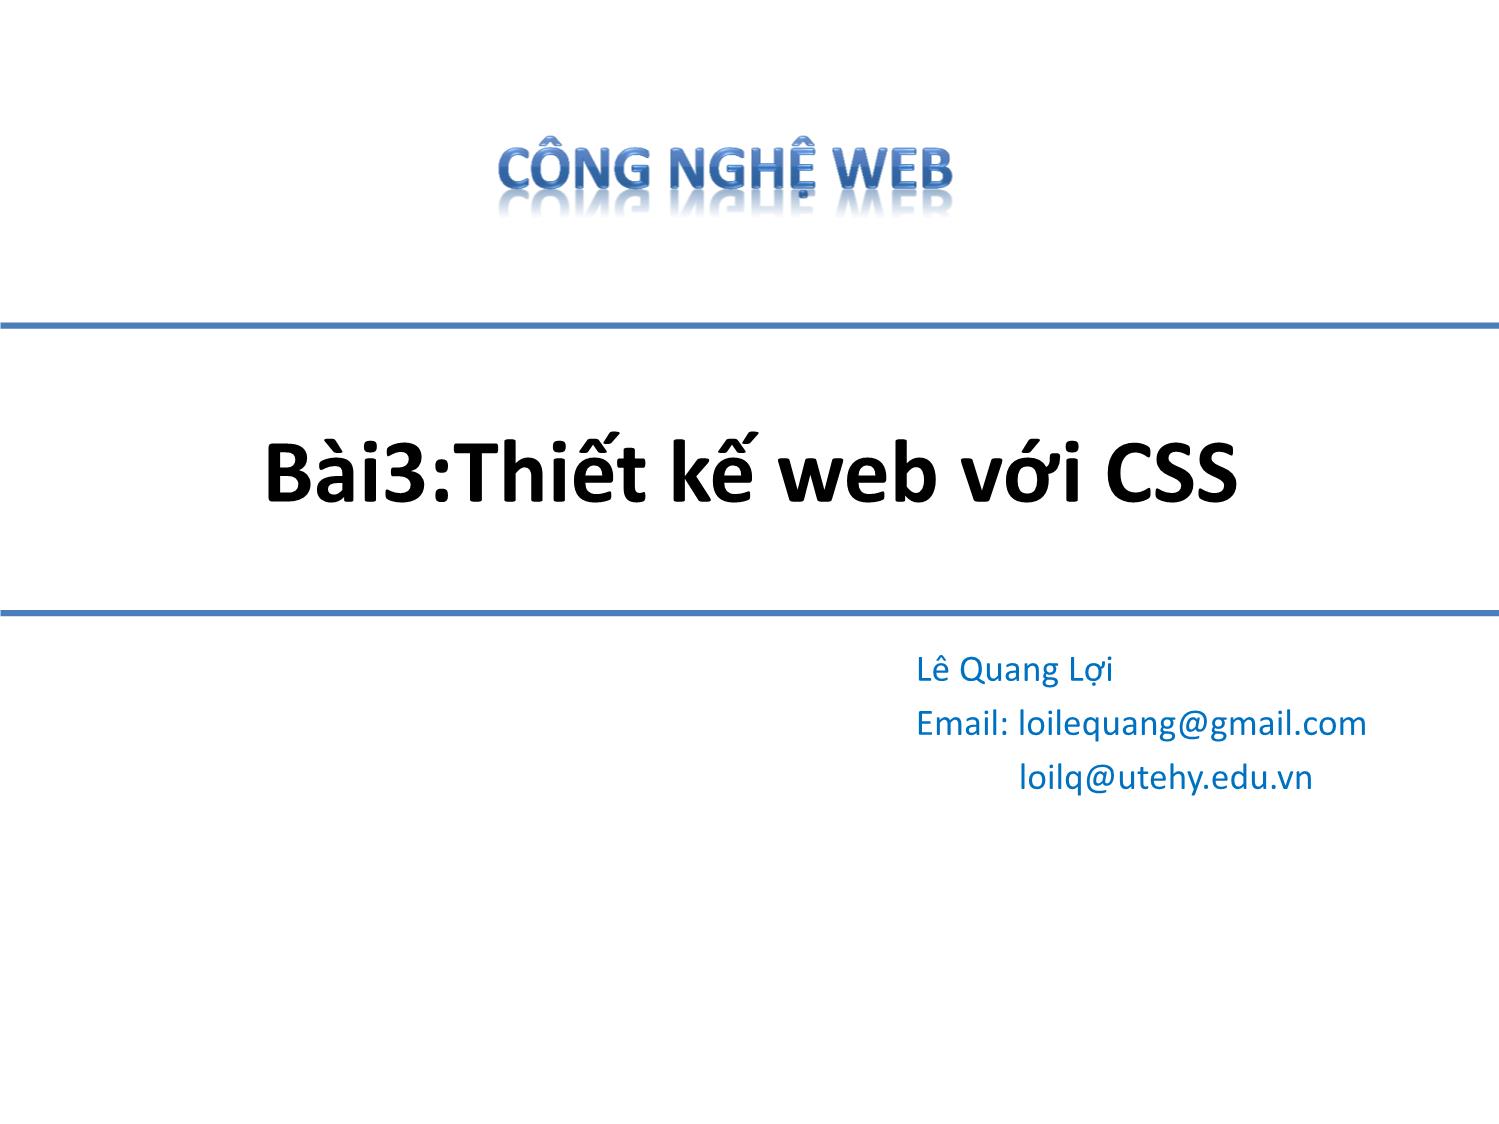 Bài giảng Công nghệ Web - Bài 3: Thiết kế web với CSS - Lê Quang Lợi trang 1